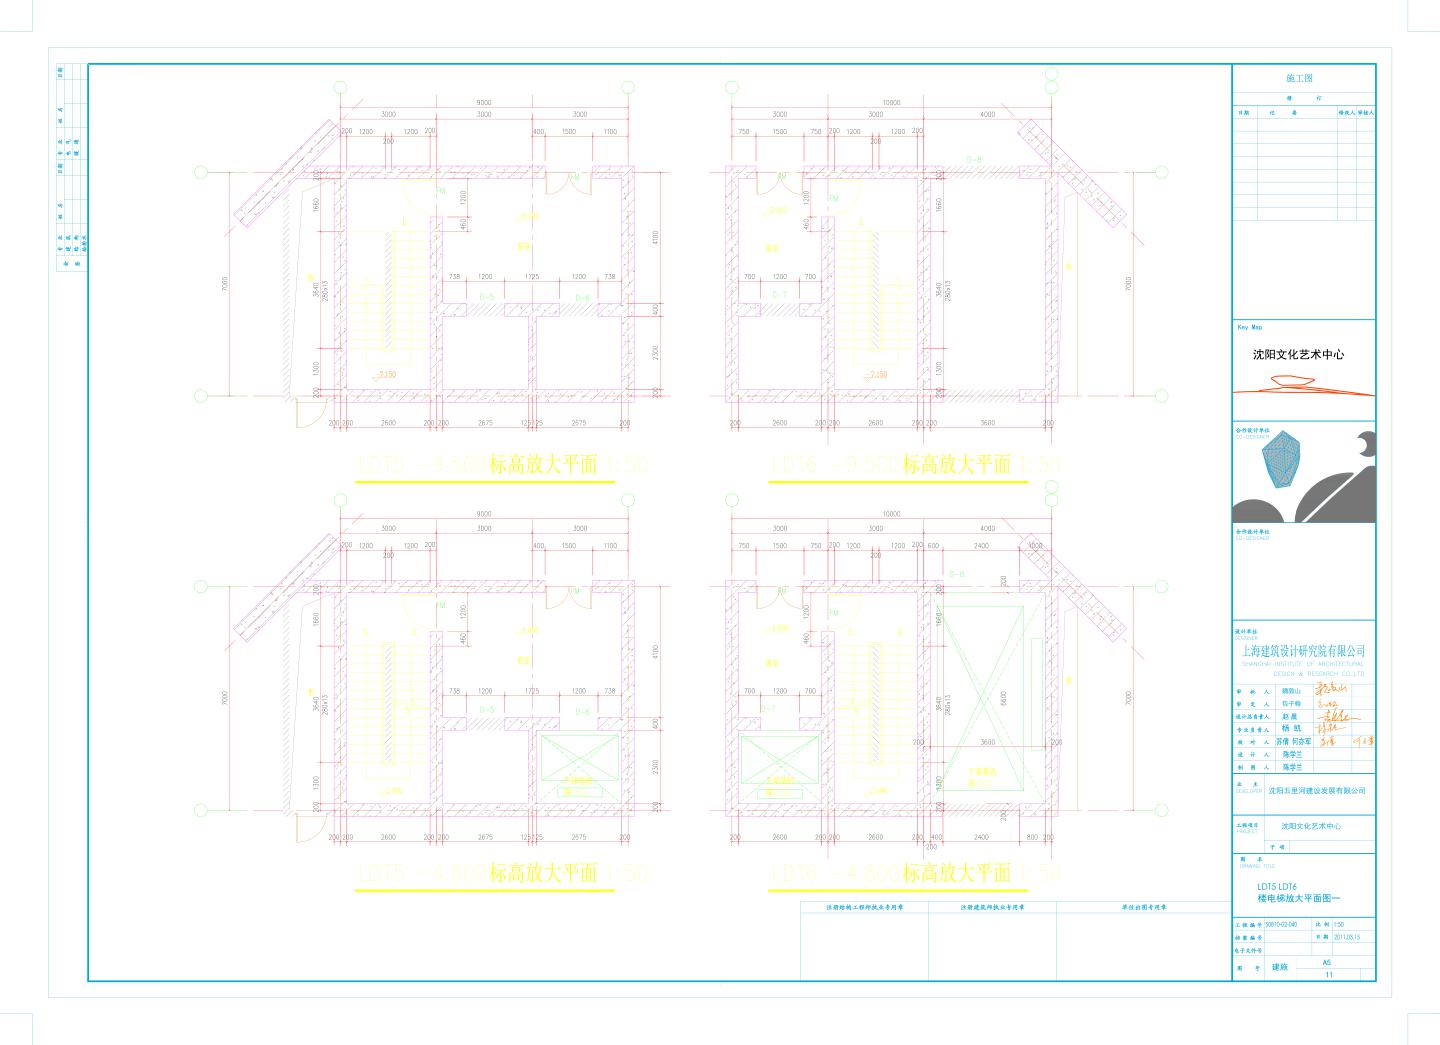 cxl大剧院楼梯11-03-11平面图